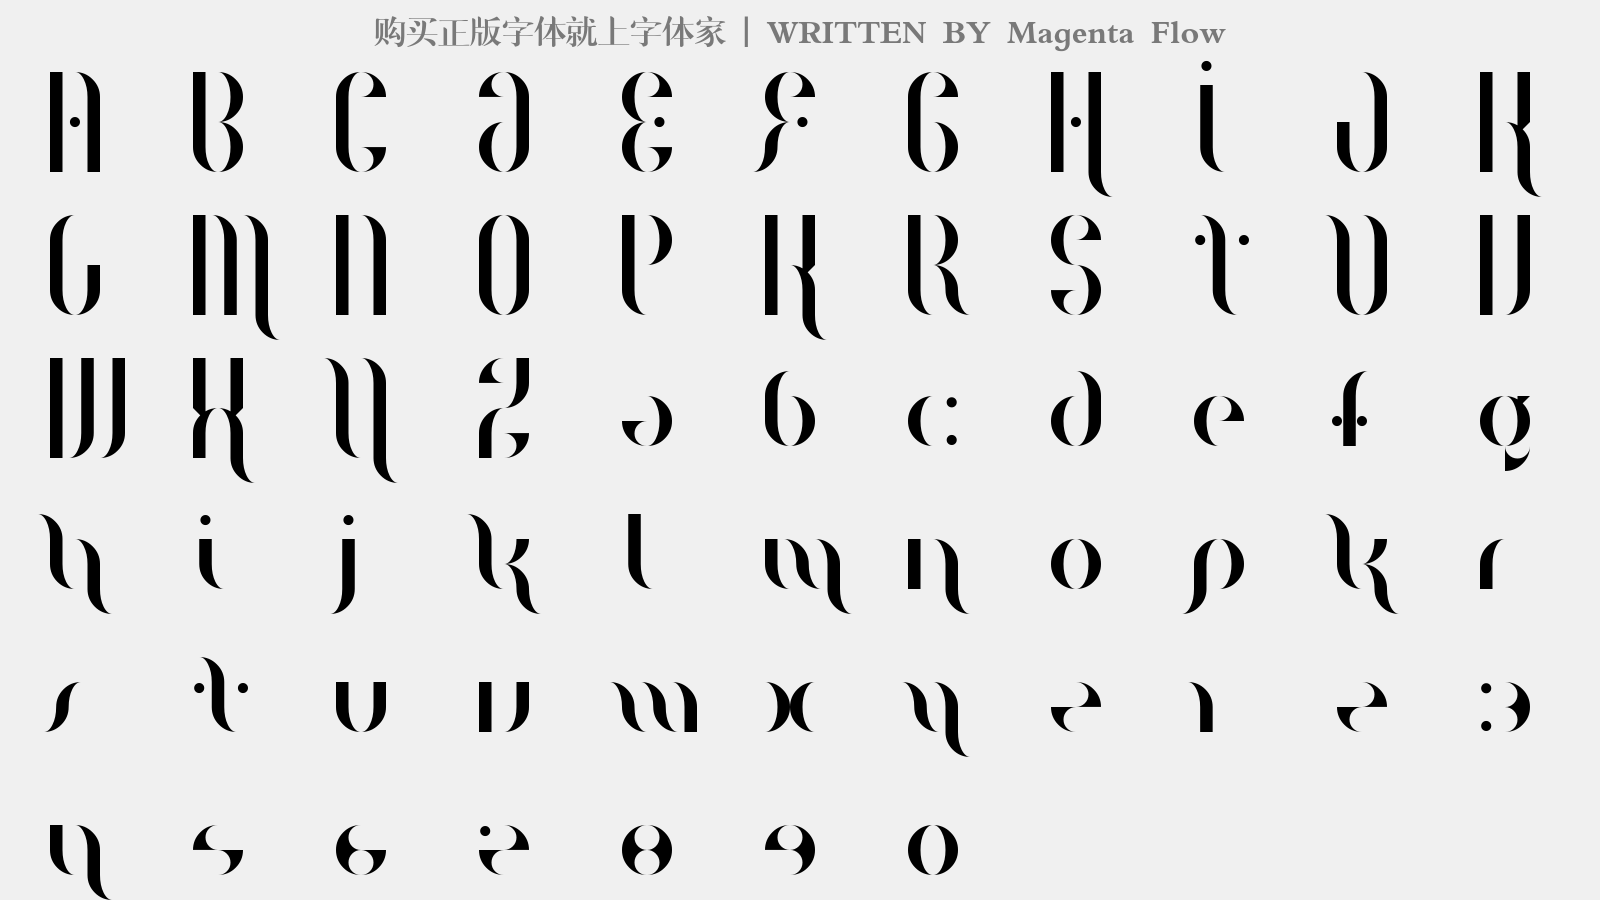 Magenta Flow - 大写字母/小写字母/数字